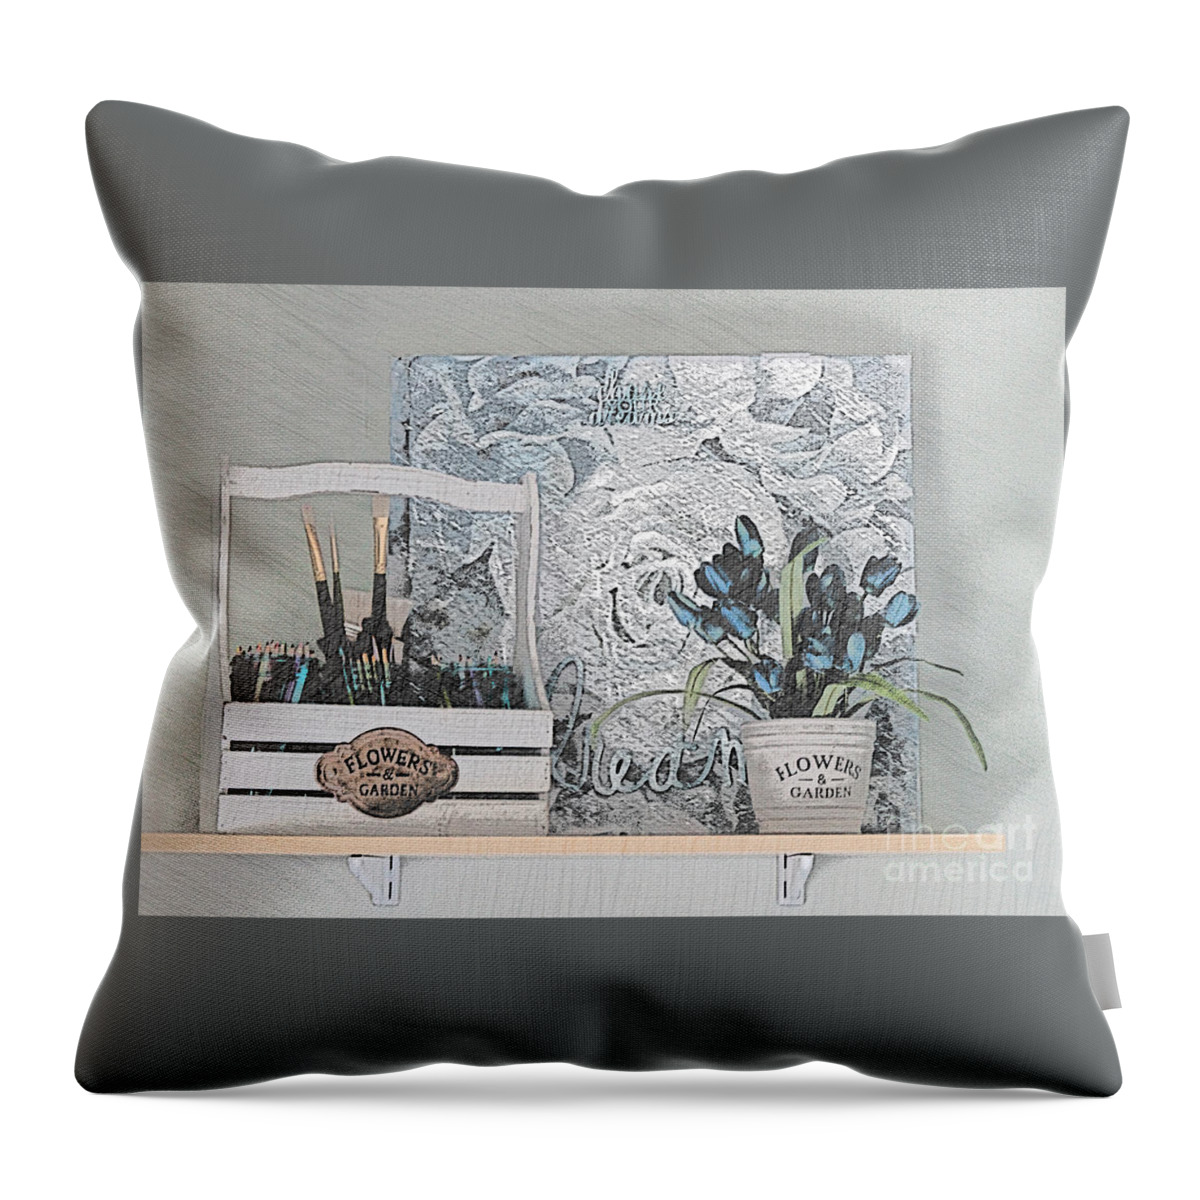 Artist Throw Pillow featuring the photograph An Artist's Shelf by Sherry Hallemeier